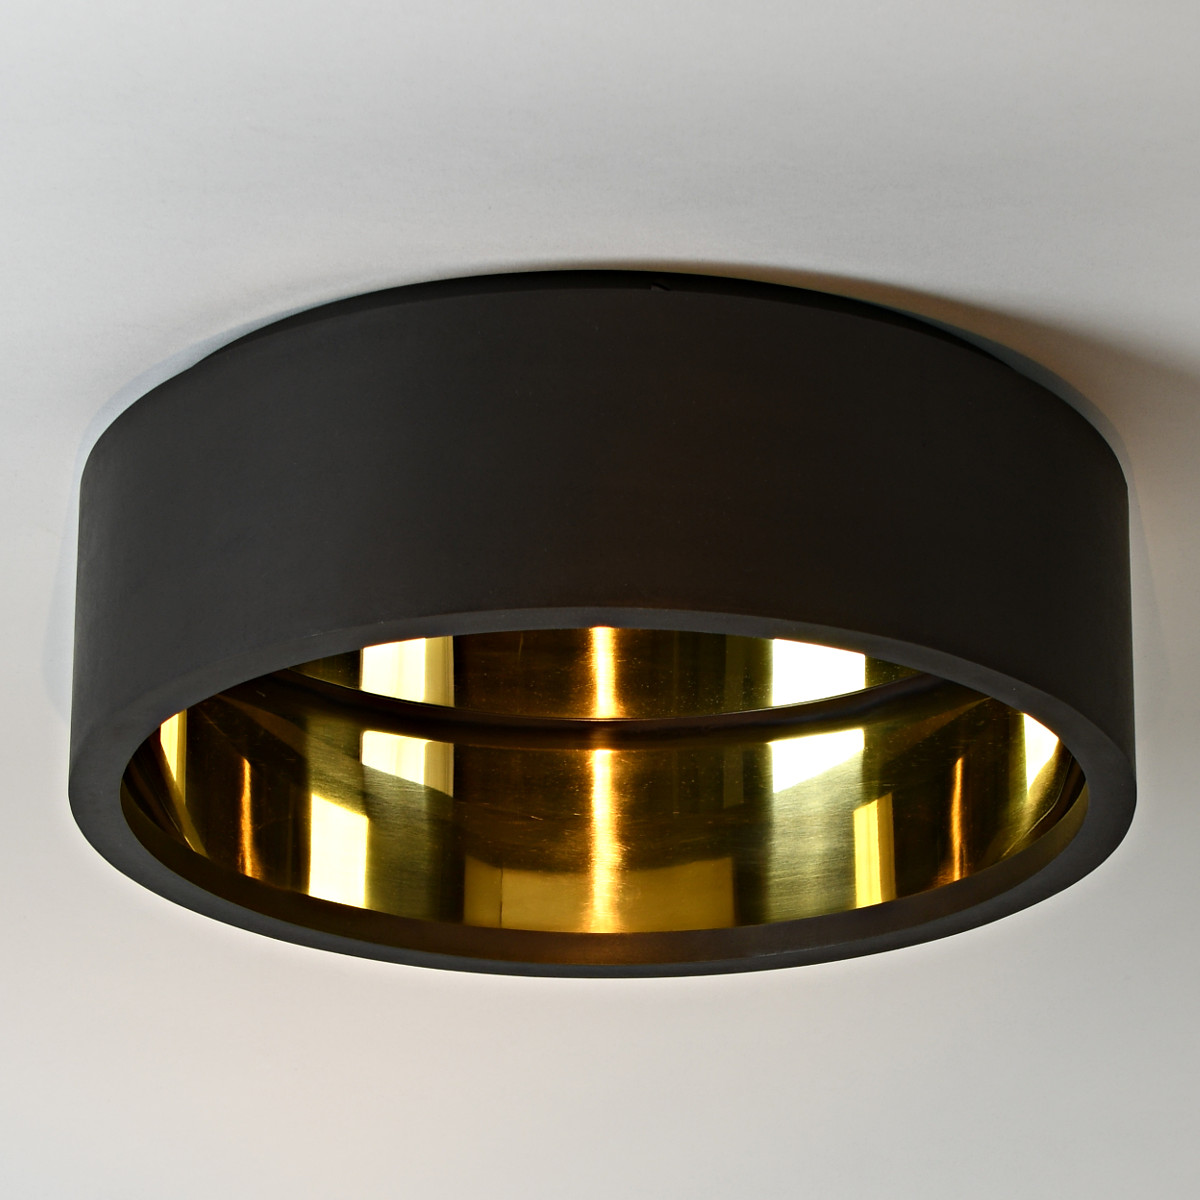 Ring-Deckenleuchte ECLIPSE, Messing, innen reflektierend poliert, Ø 40–100 cm: Einzigartige Ring-Deckenleuchte mit innnen reflektierendem LED-Streifen, außen bronze dunkel, innen glänzend